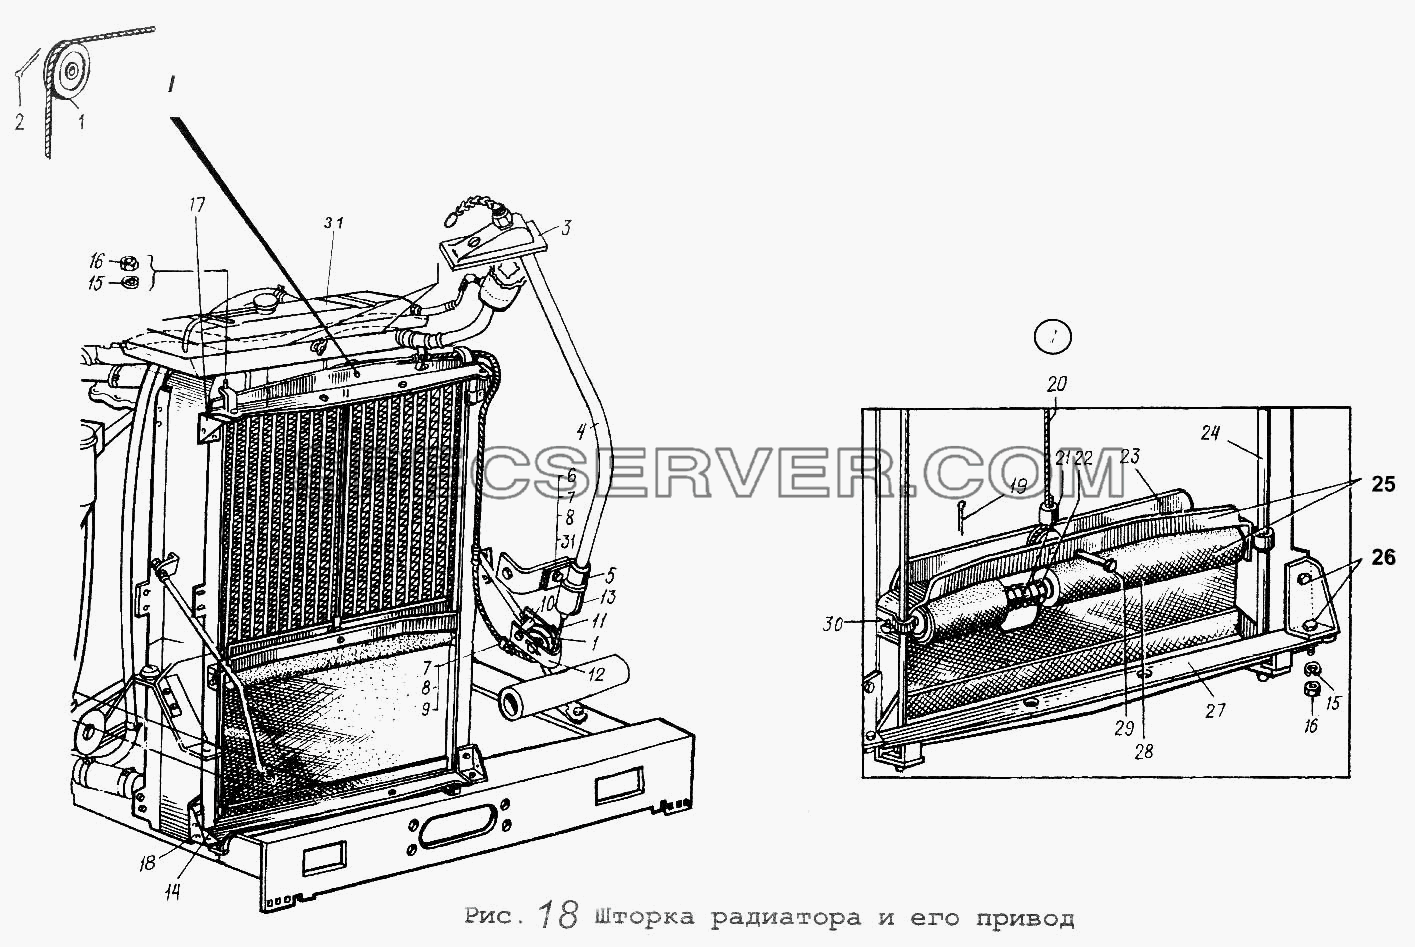 Шторка радиатора и его привод для МАЗ-5337 (список запасных частей)